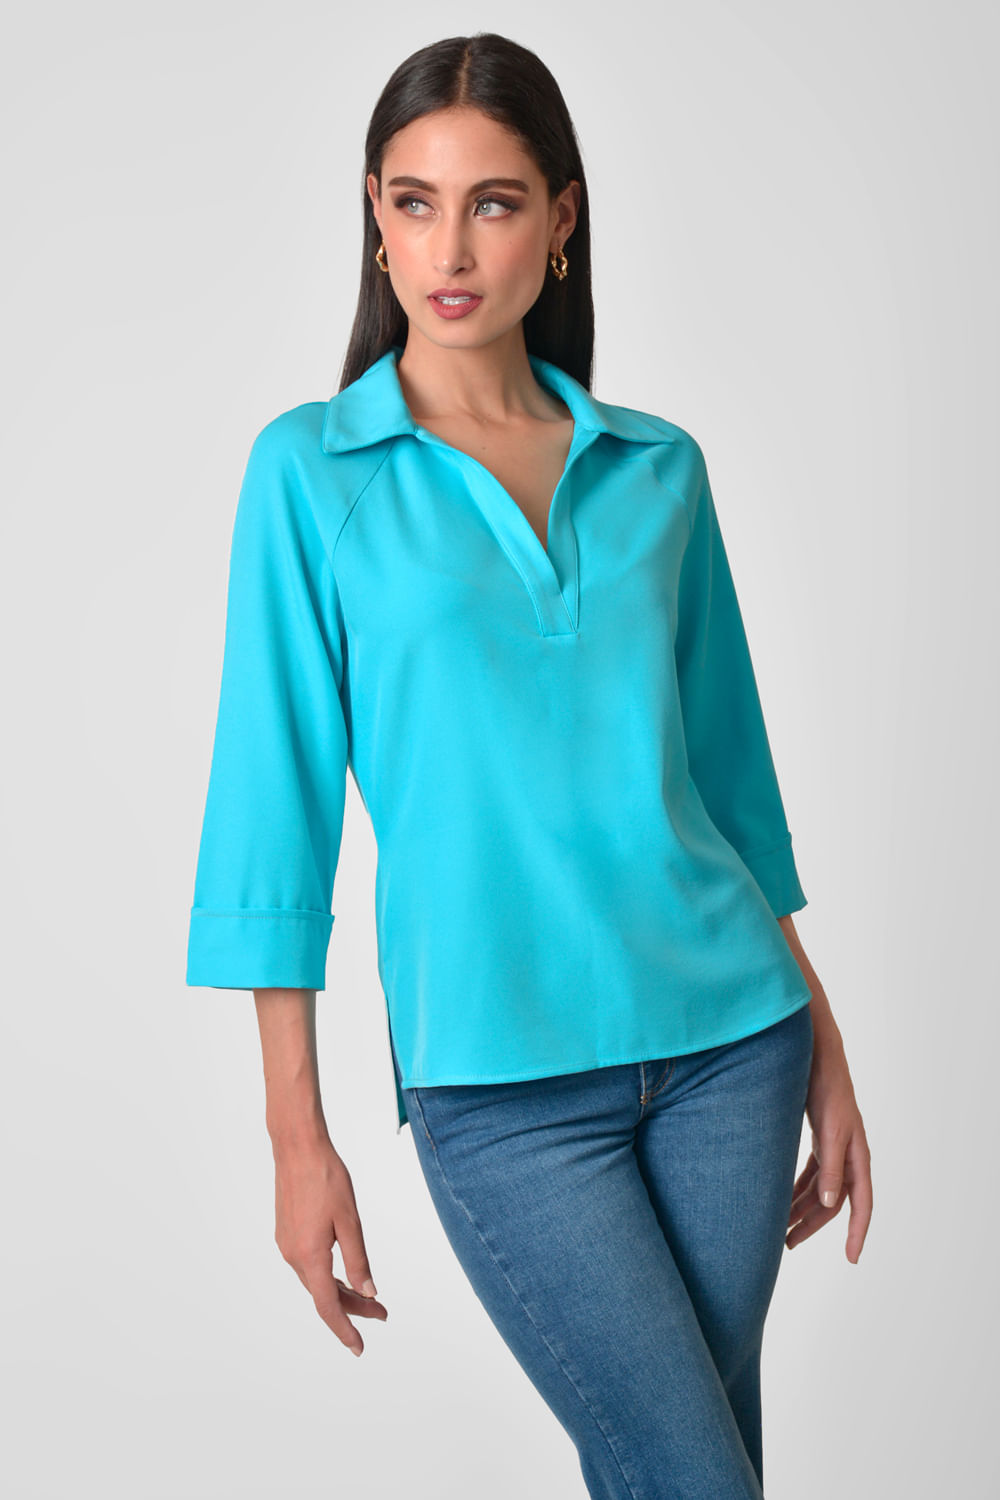 Camisa Mujer Mangas Color Blusas Simple Estilo V-Cuello 3/4 Sólido